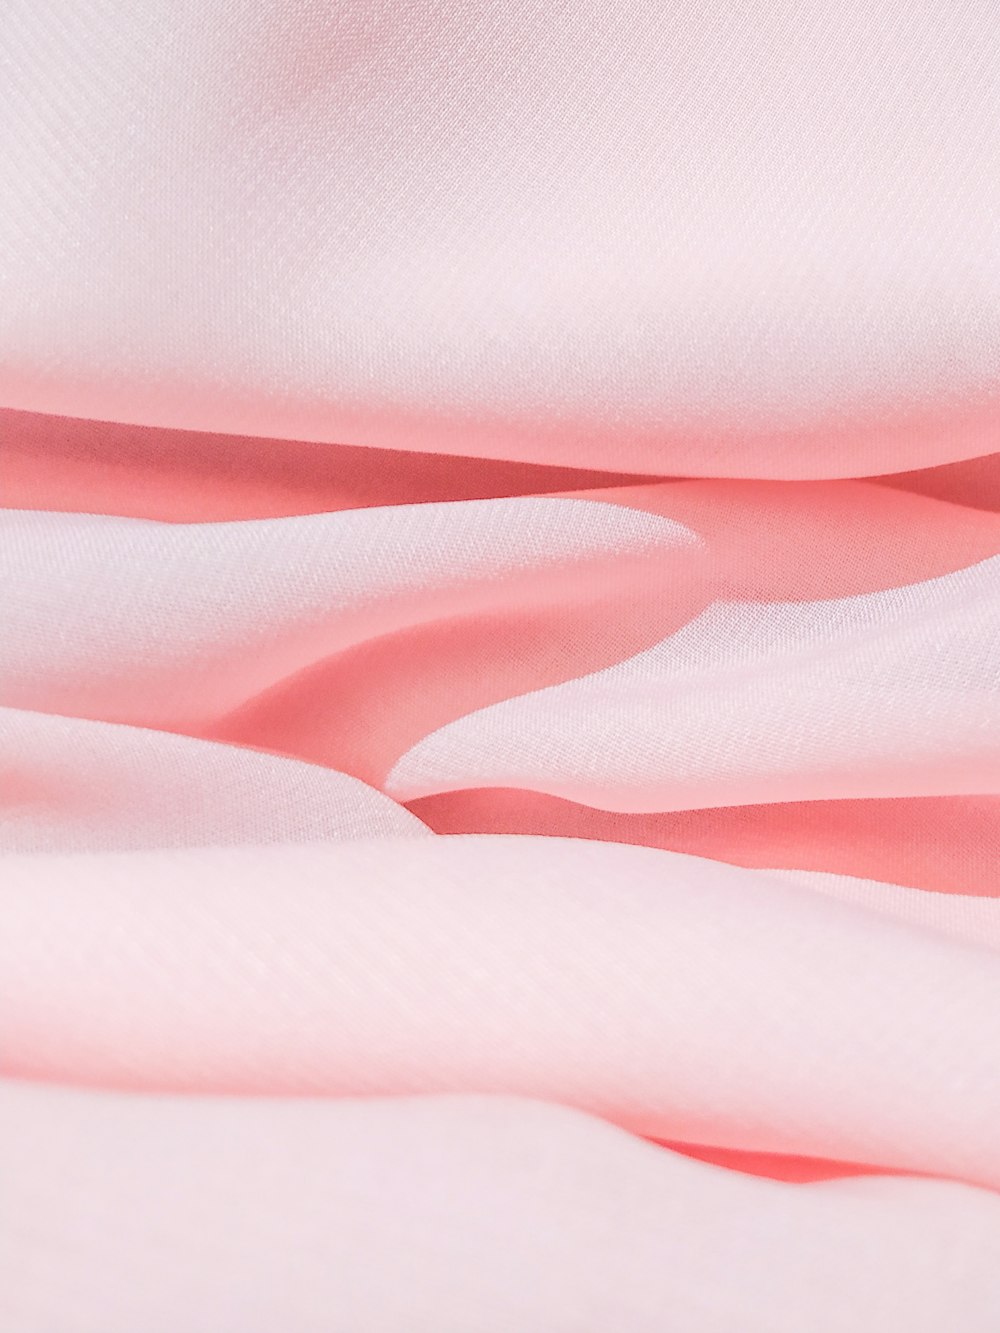 Textil de rayas rosas y blancas